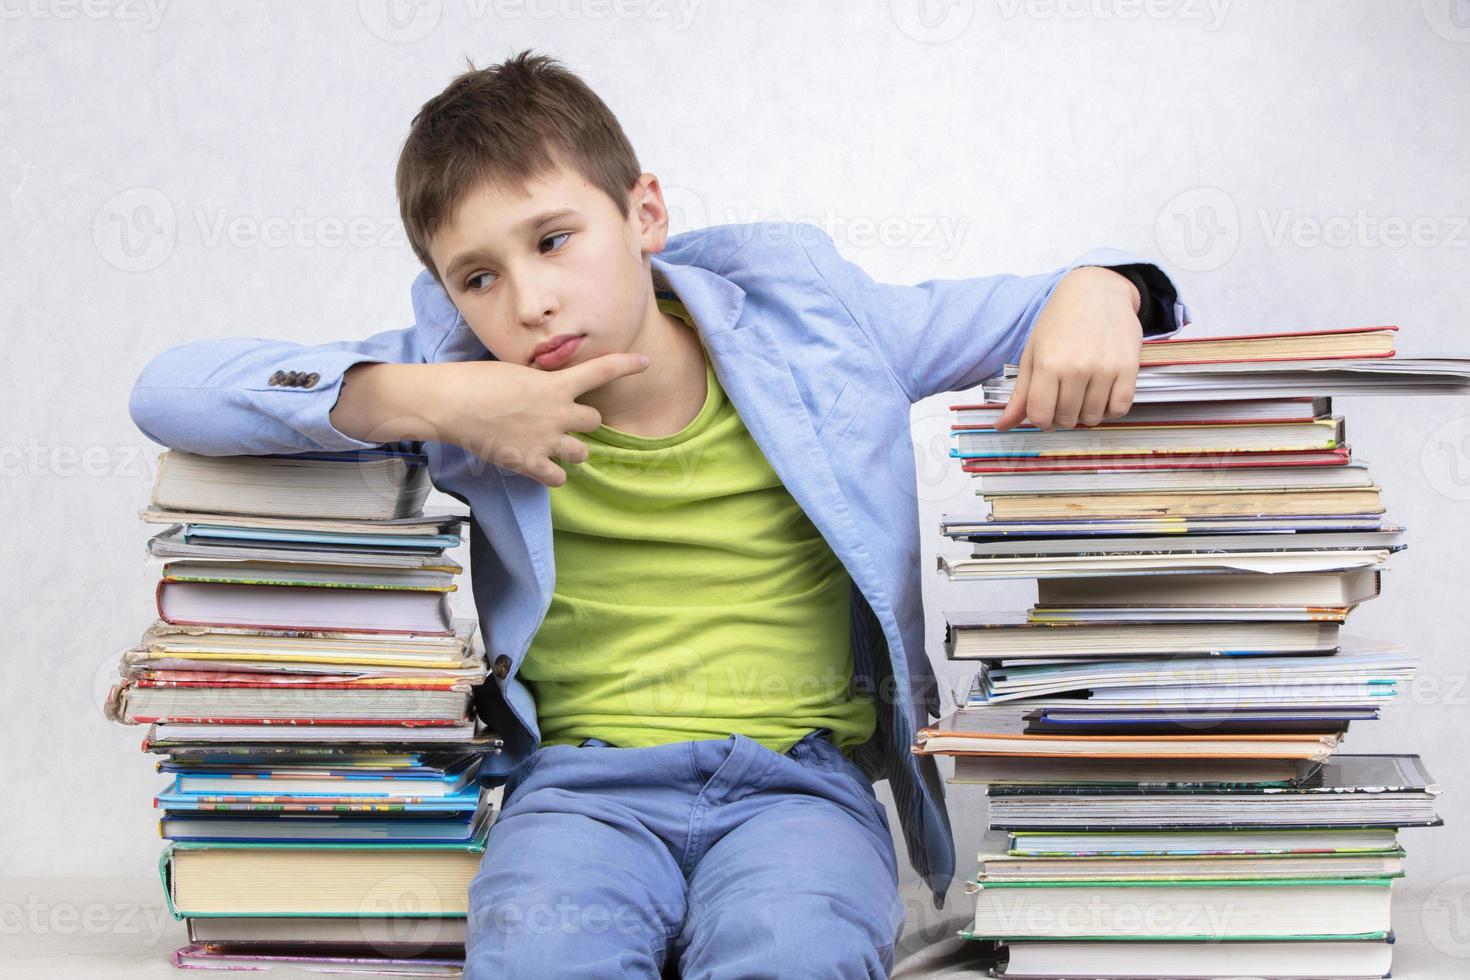 verdrietig nadenkend jongen leerling zit tussen stapels van boeken. verkrijgen kennis. moe leerling. foto